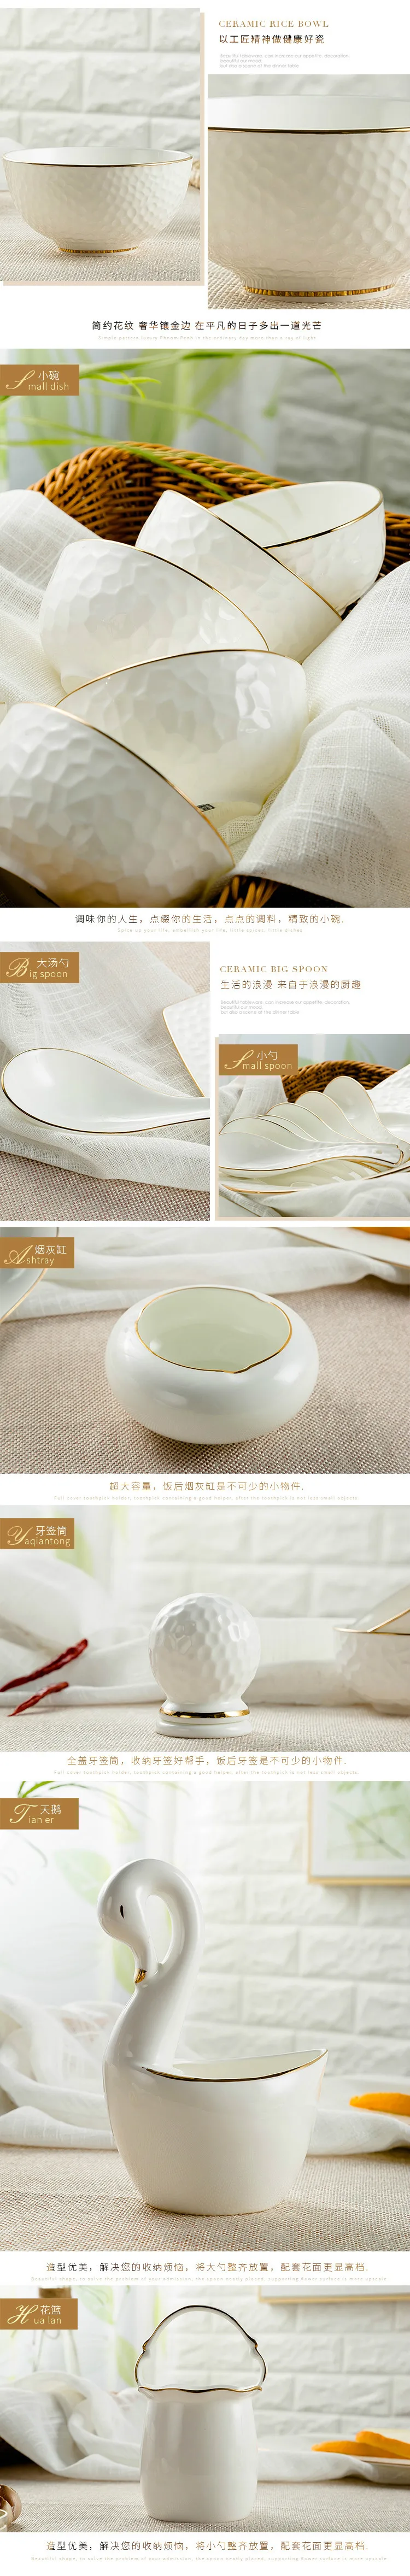 Столовые приборы Наборы посуды Цзиндэчжэнь костяной фарфор рельеф посуда керамическая чаша 60 шт Золотая посуда